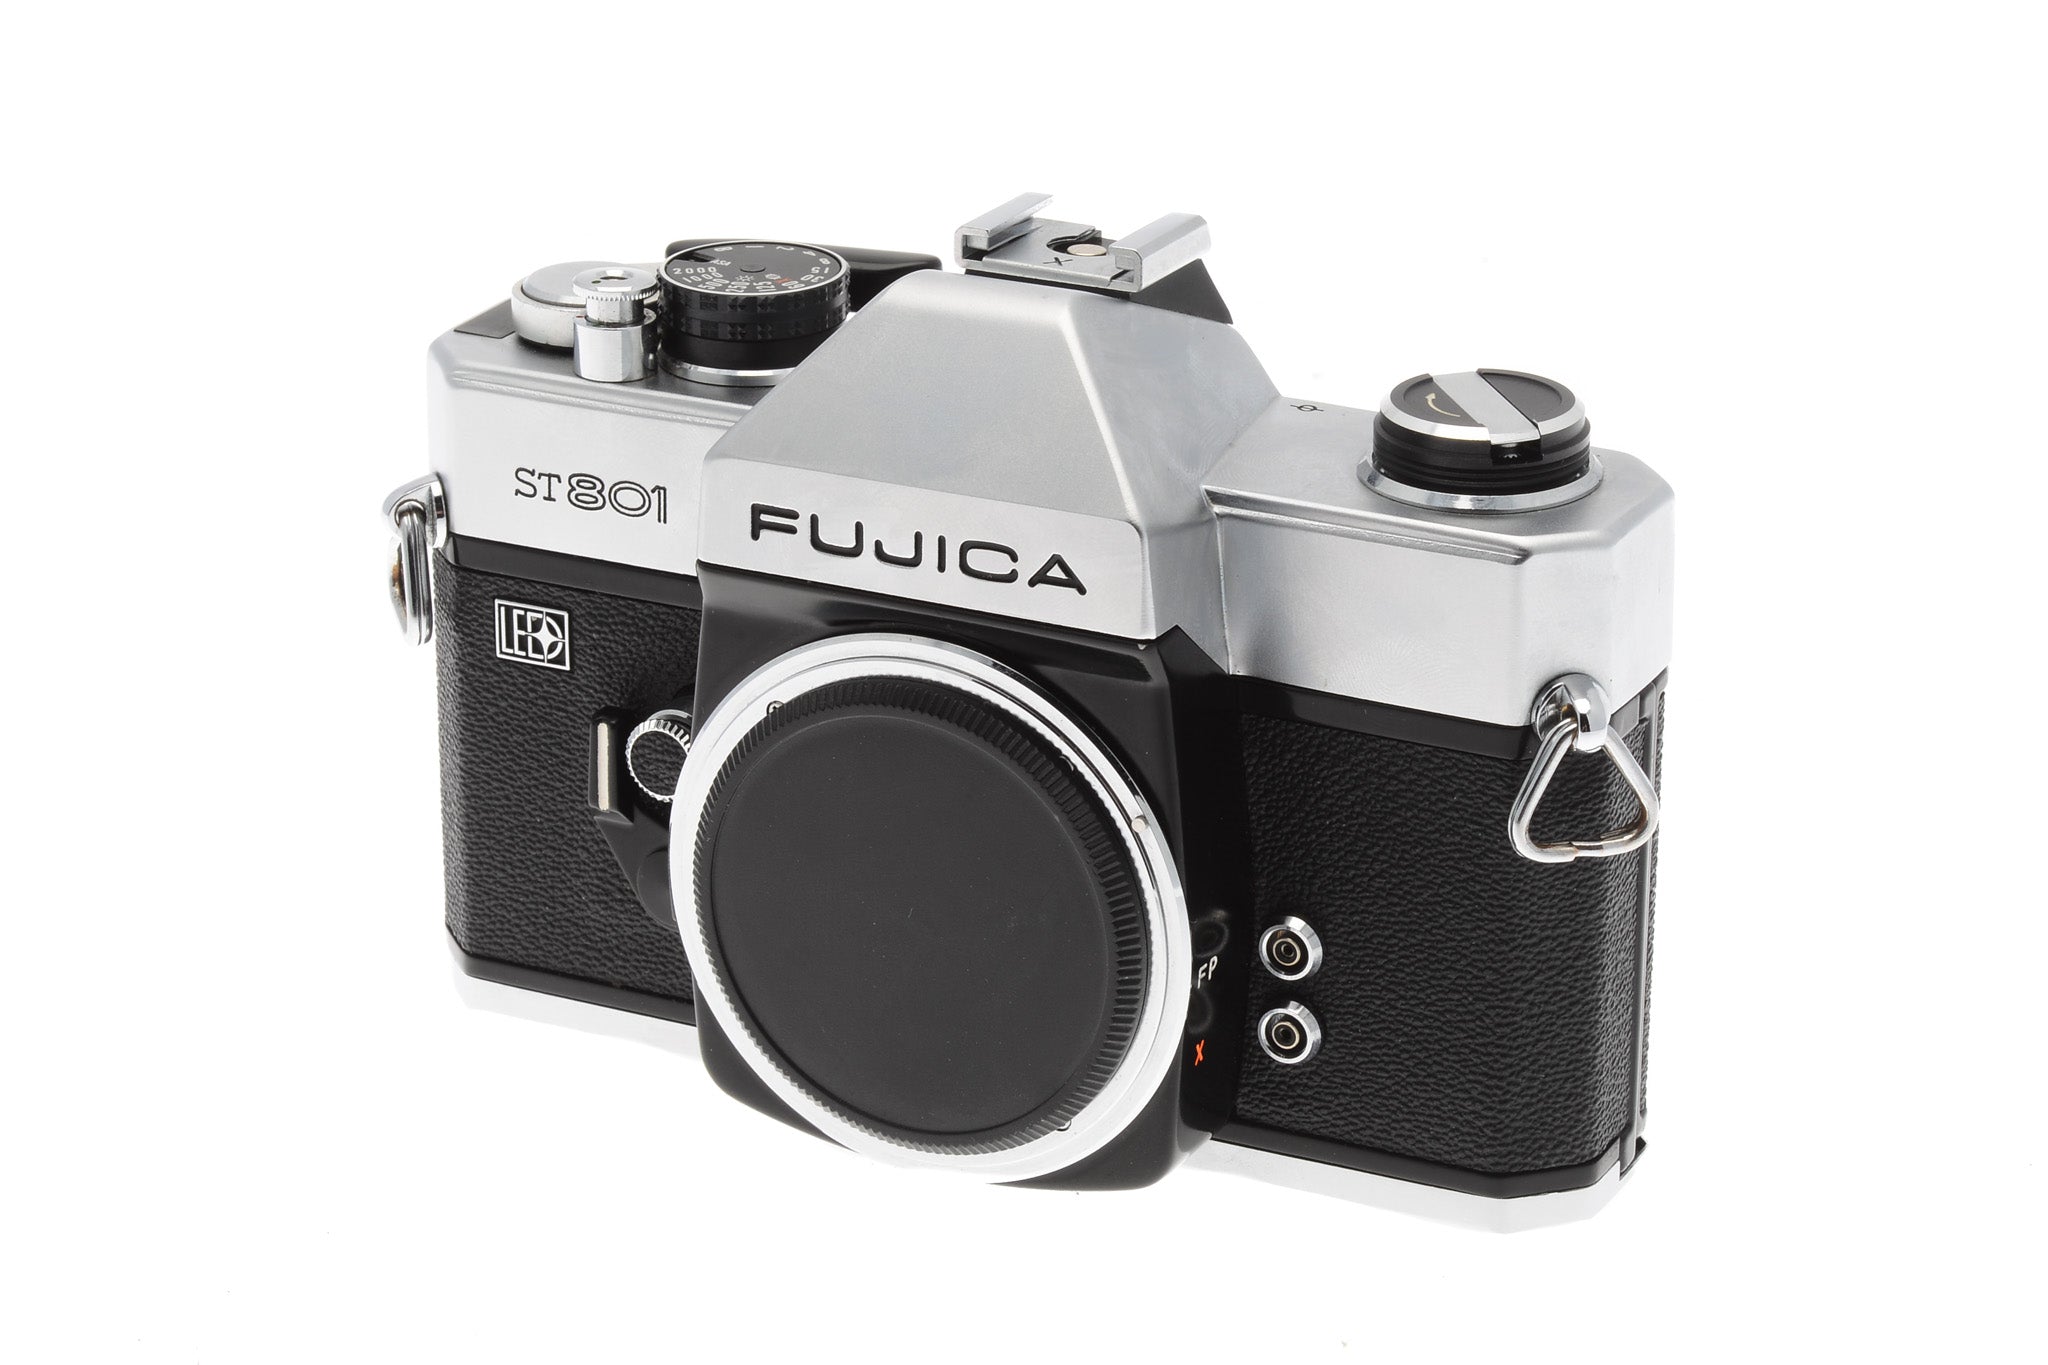 Fujica ST801 - Camera